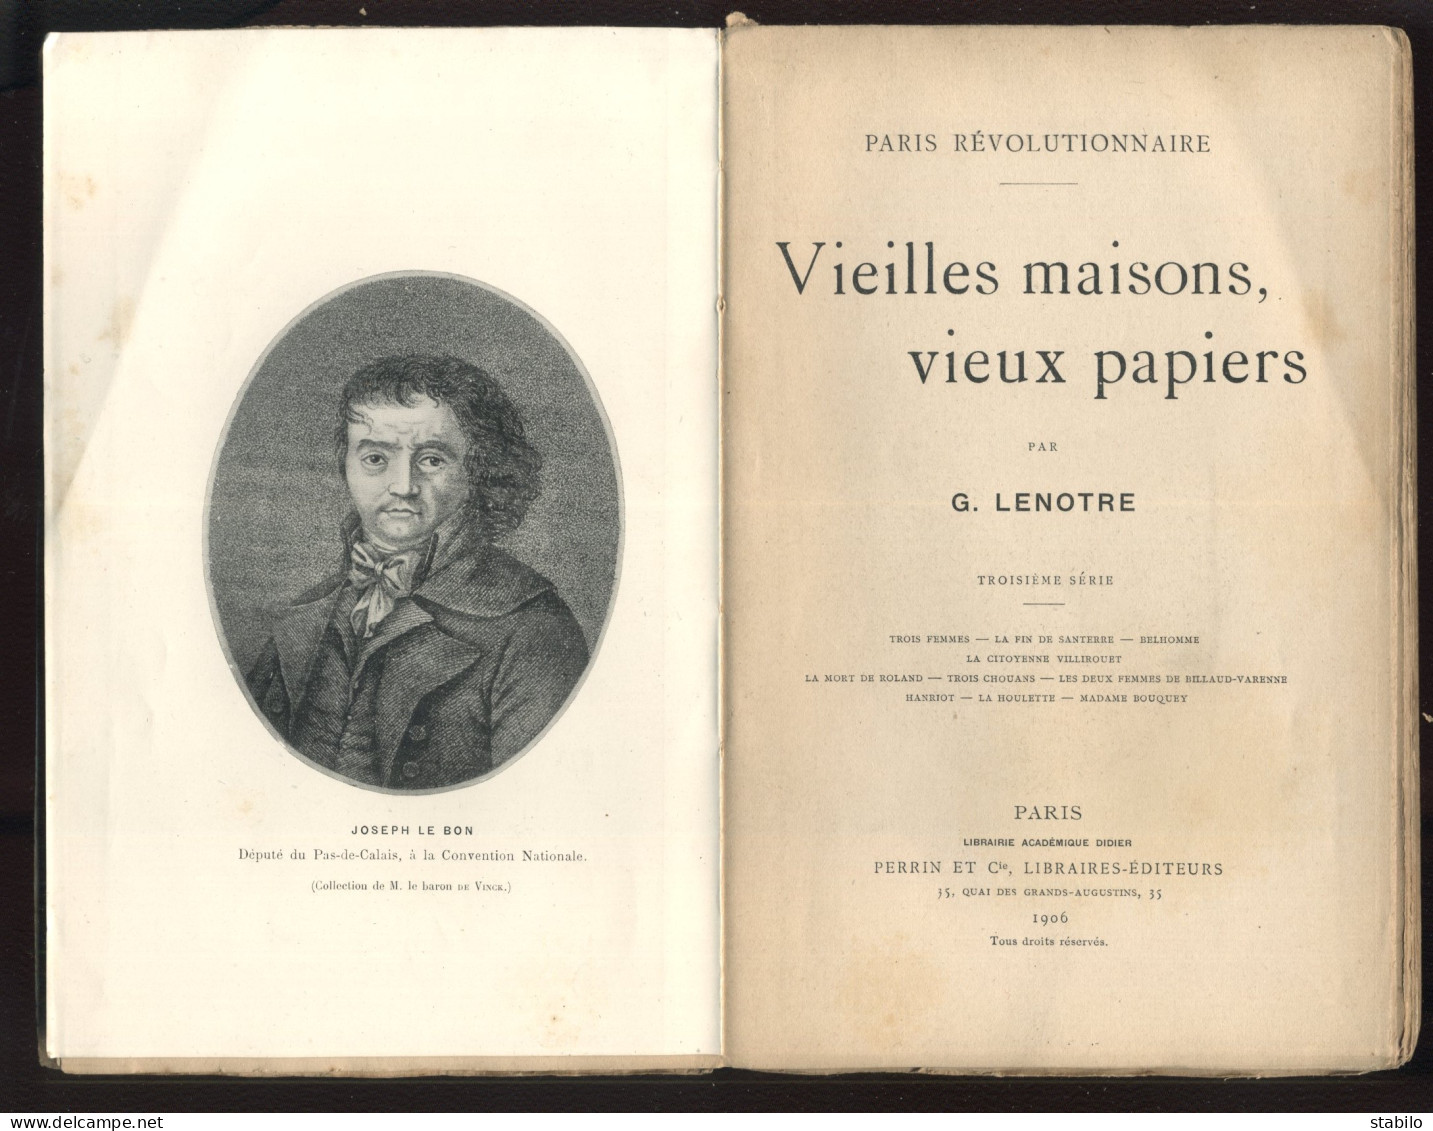 PARIS REVOLUTIONNAIRE - VIEILLES MAISONS, VIEUX PAPIERS PAR G. LENOTRE - EDITEUR PERRIN 3EME SERIE 1906 - Parijs